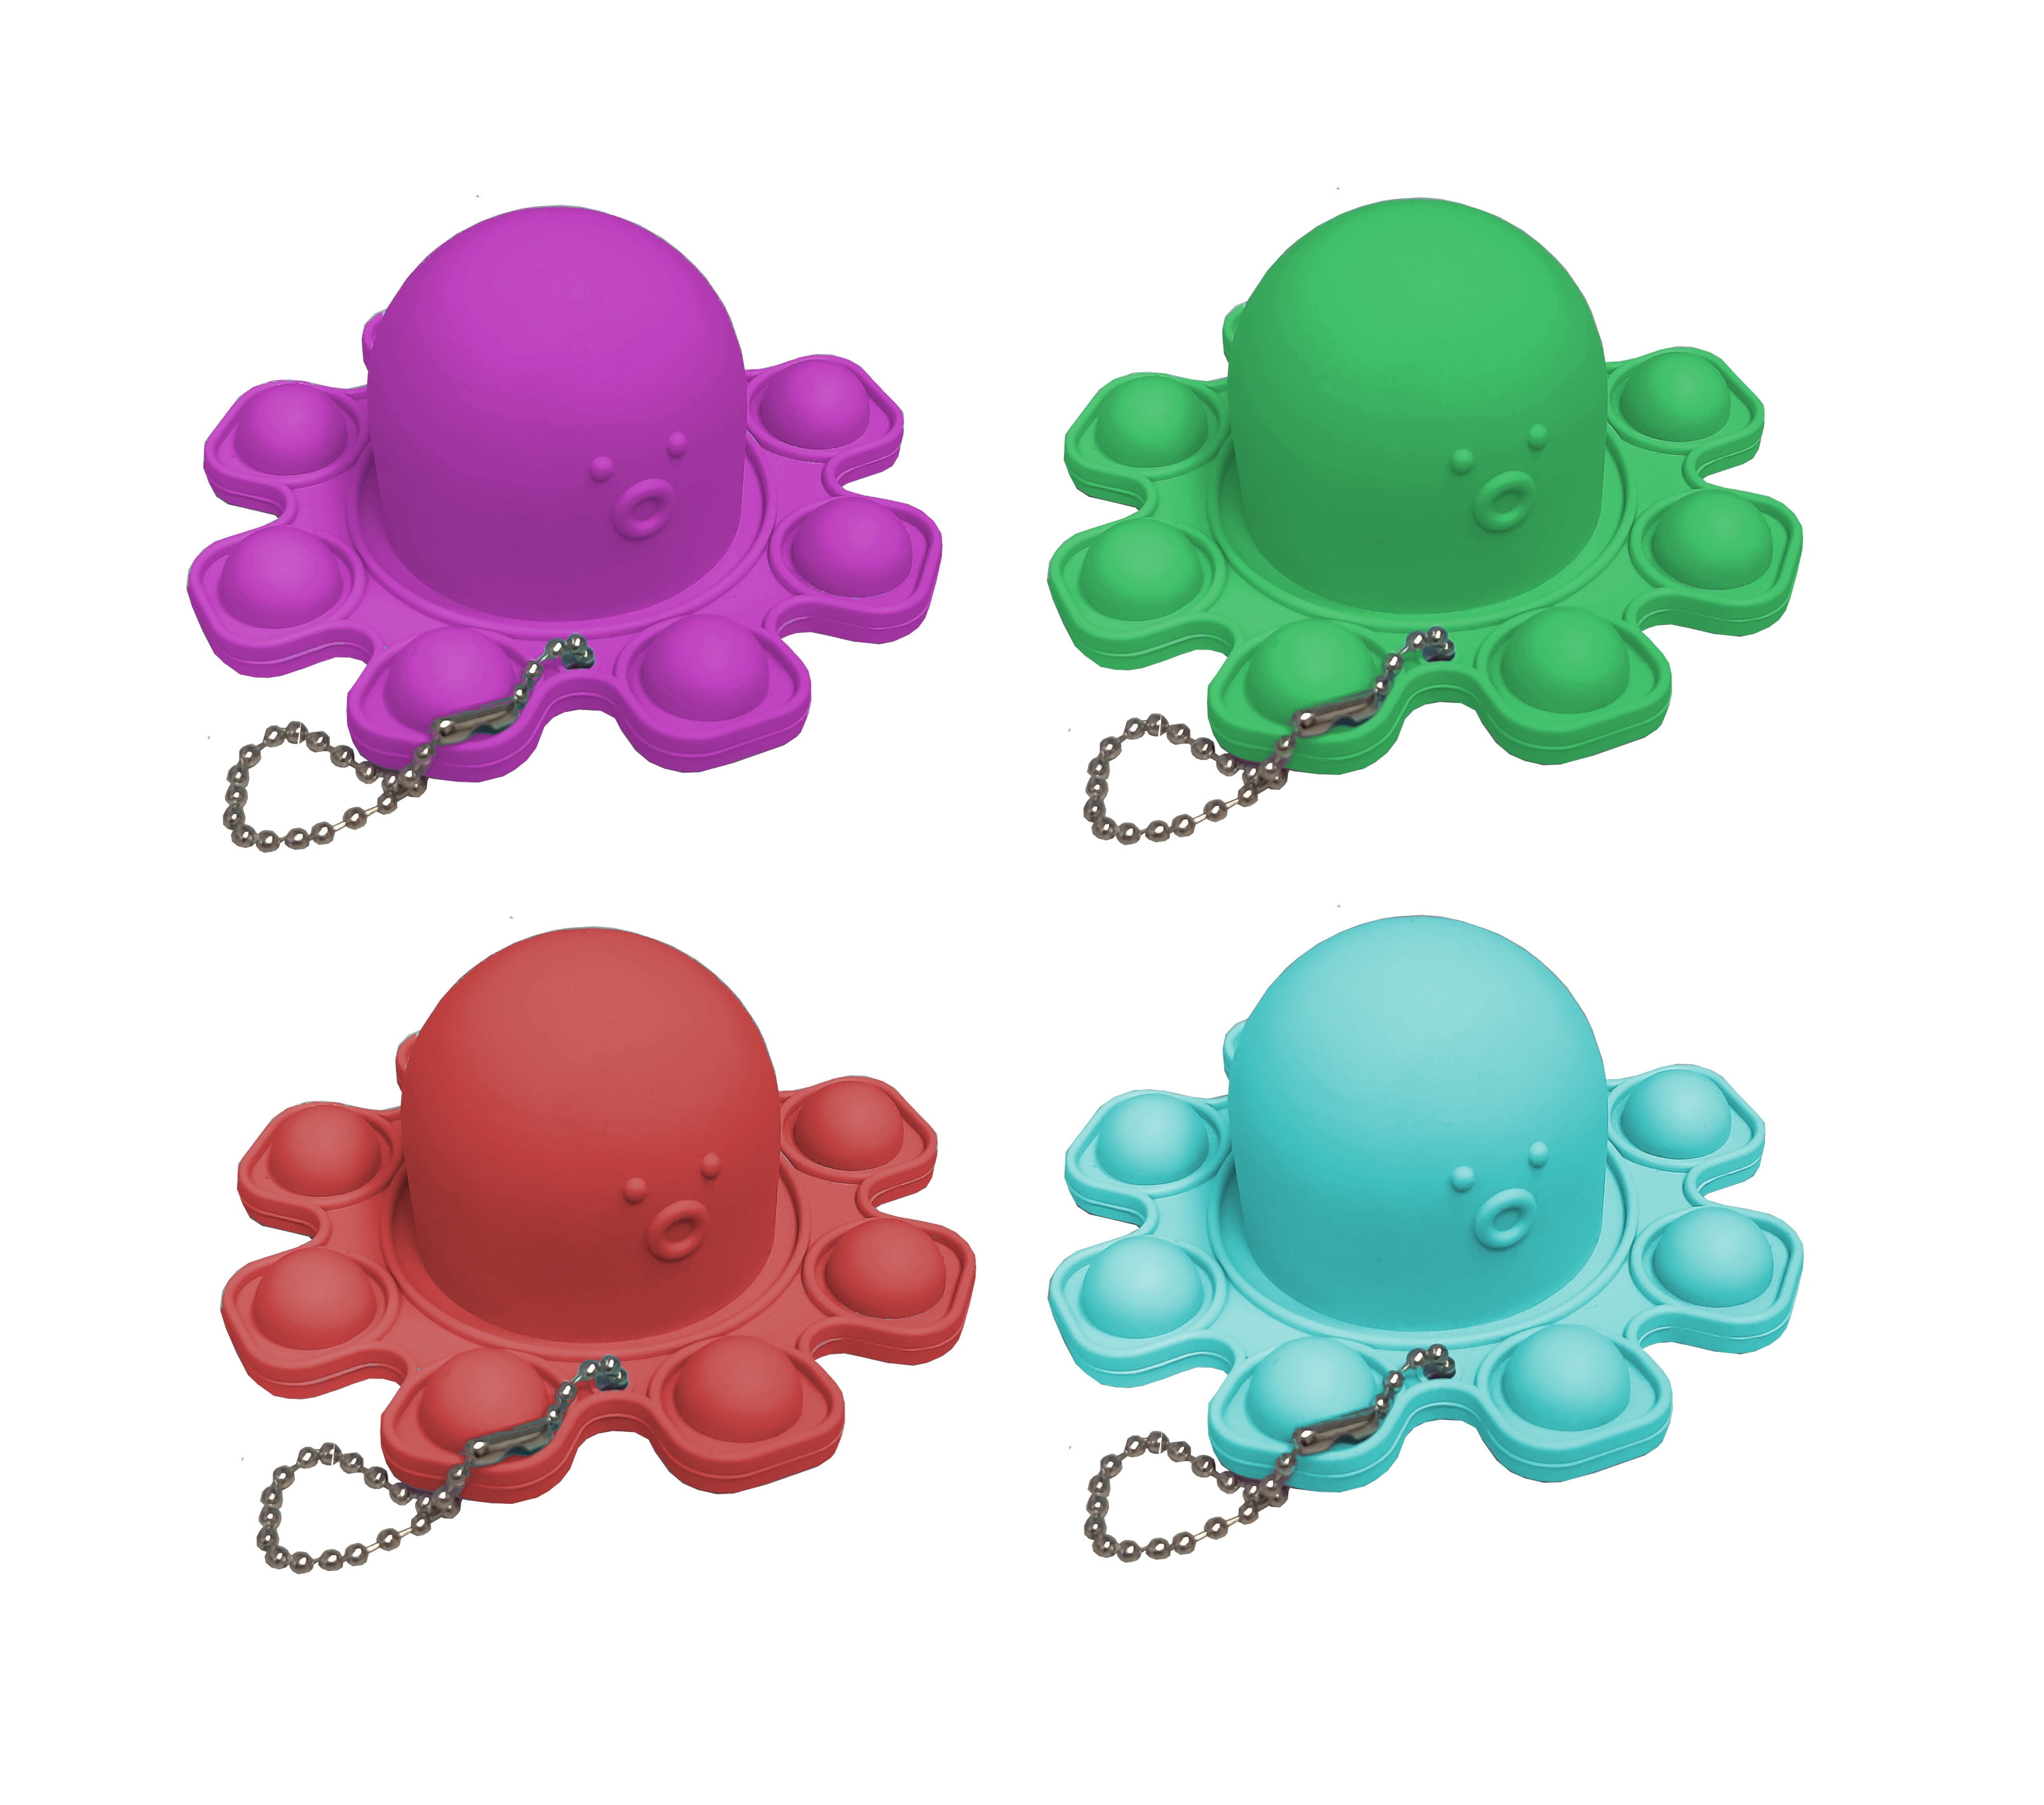 Baby Simple Dimple Push Popit Reversible Octopus Sensory Figet Fidget Toy Autism 